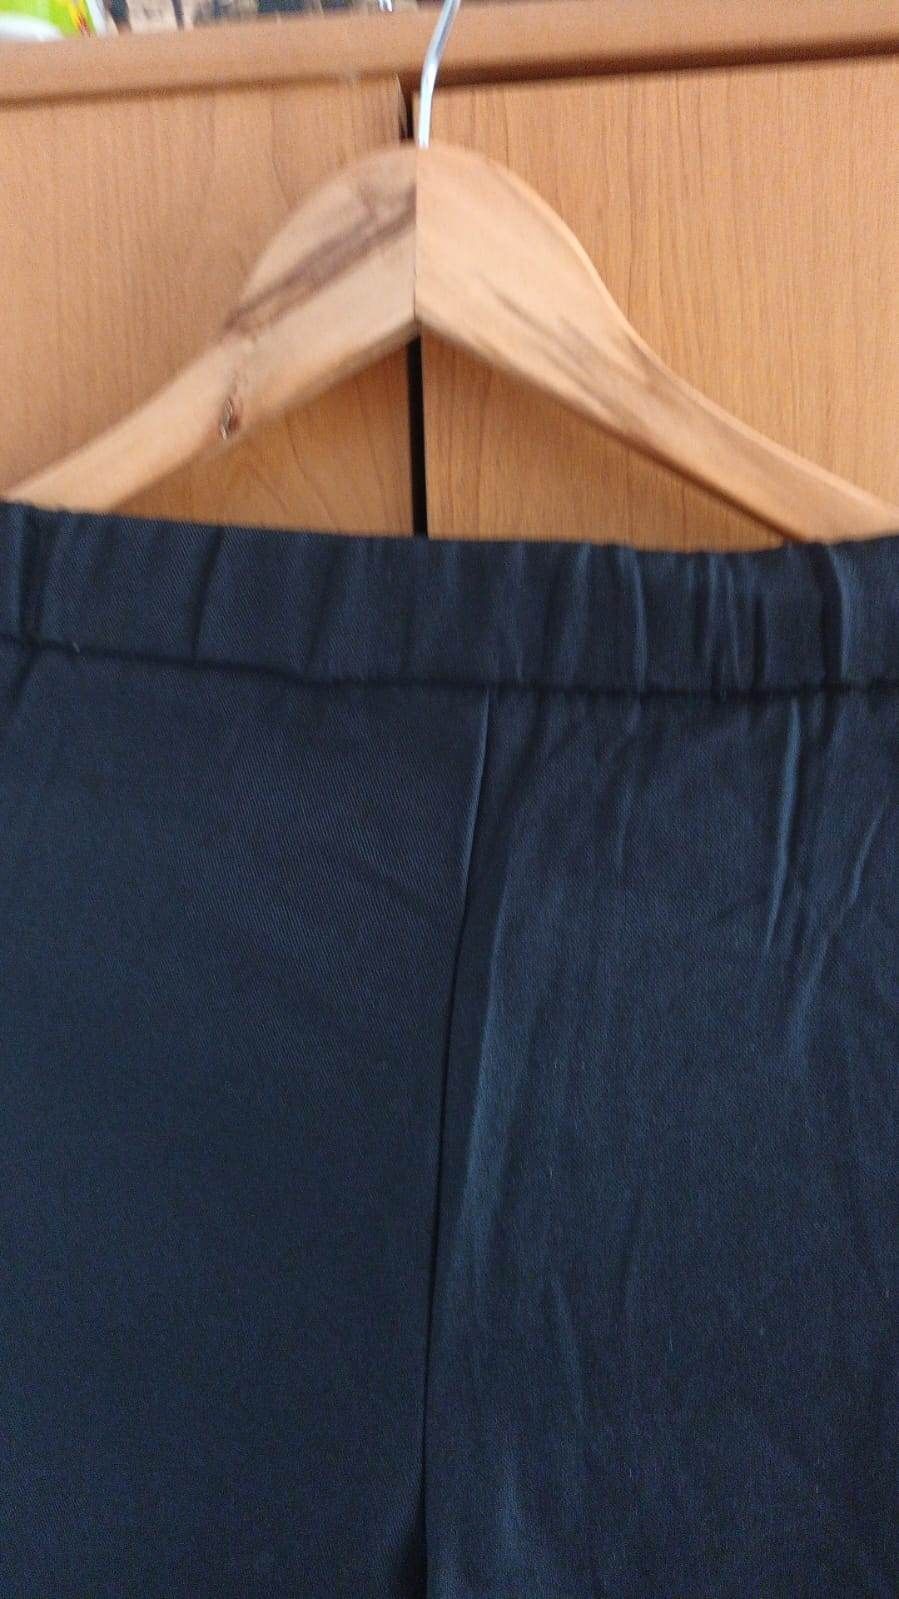 Spodnie damskie czarne z suwakami po bokach r. 40 L bez kieszeni na gu